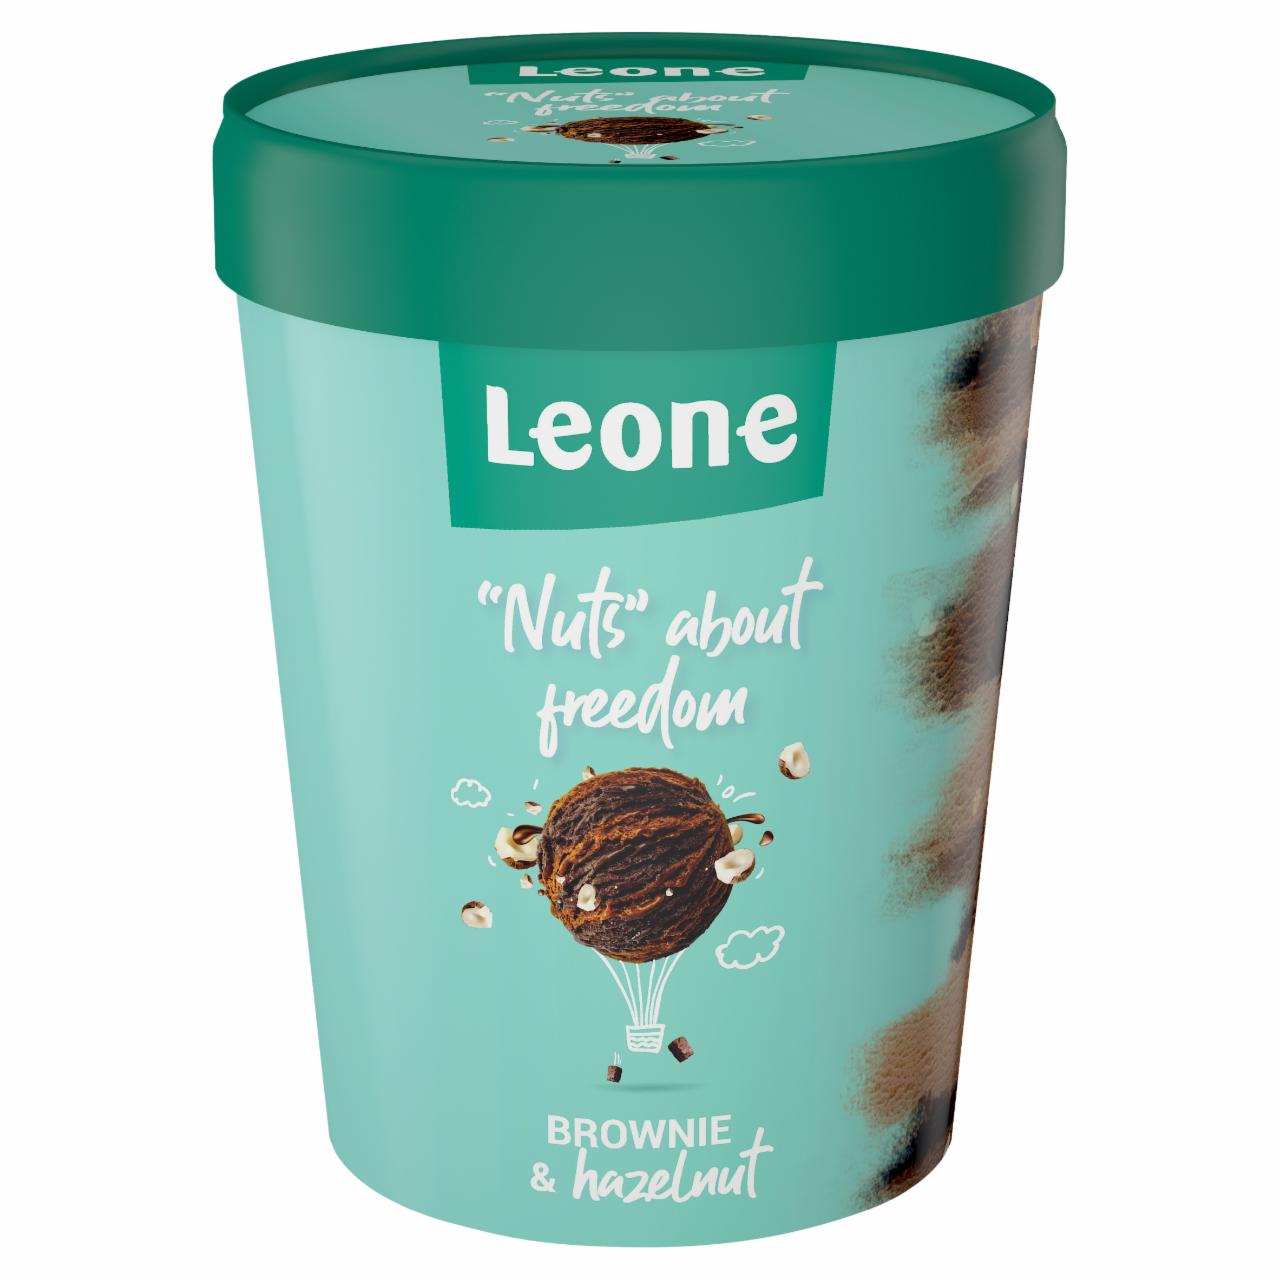 Képek - Leone csokoládés, mogyorós-csokoládés ízesítésű tejjégkrém, brownie-darabokkal 450 ml